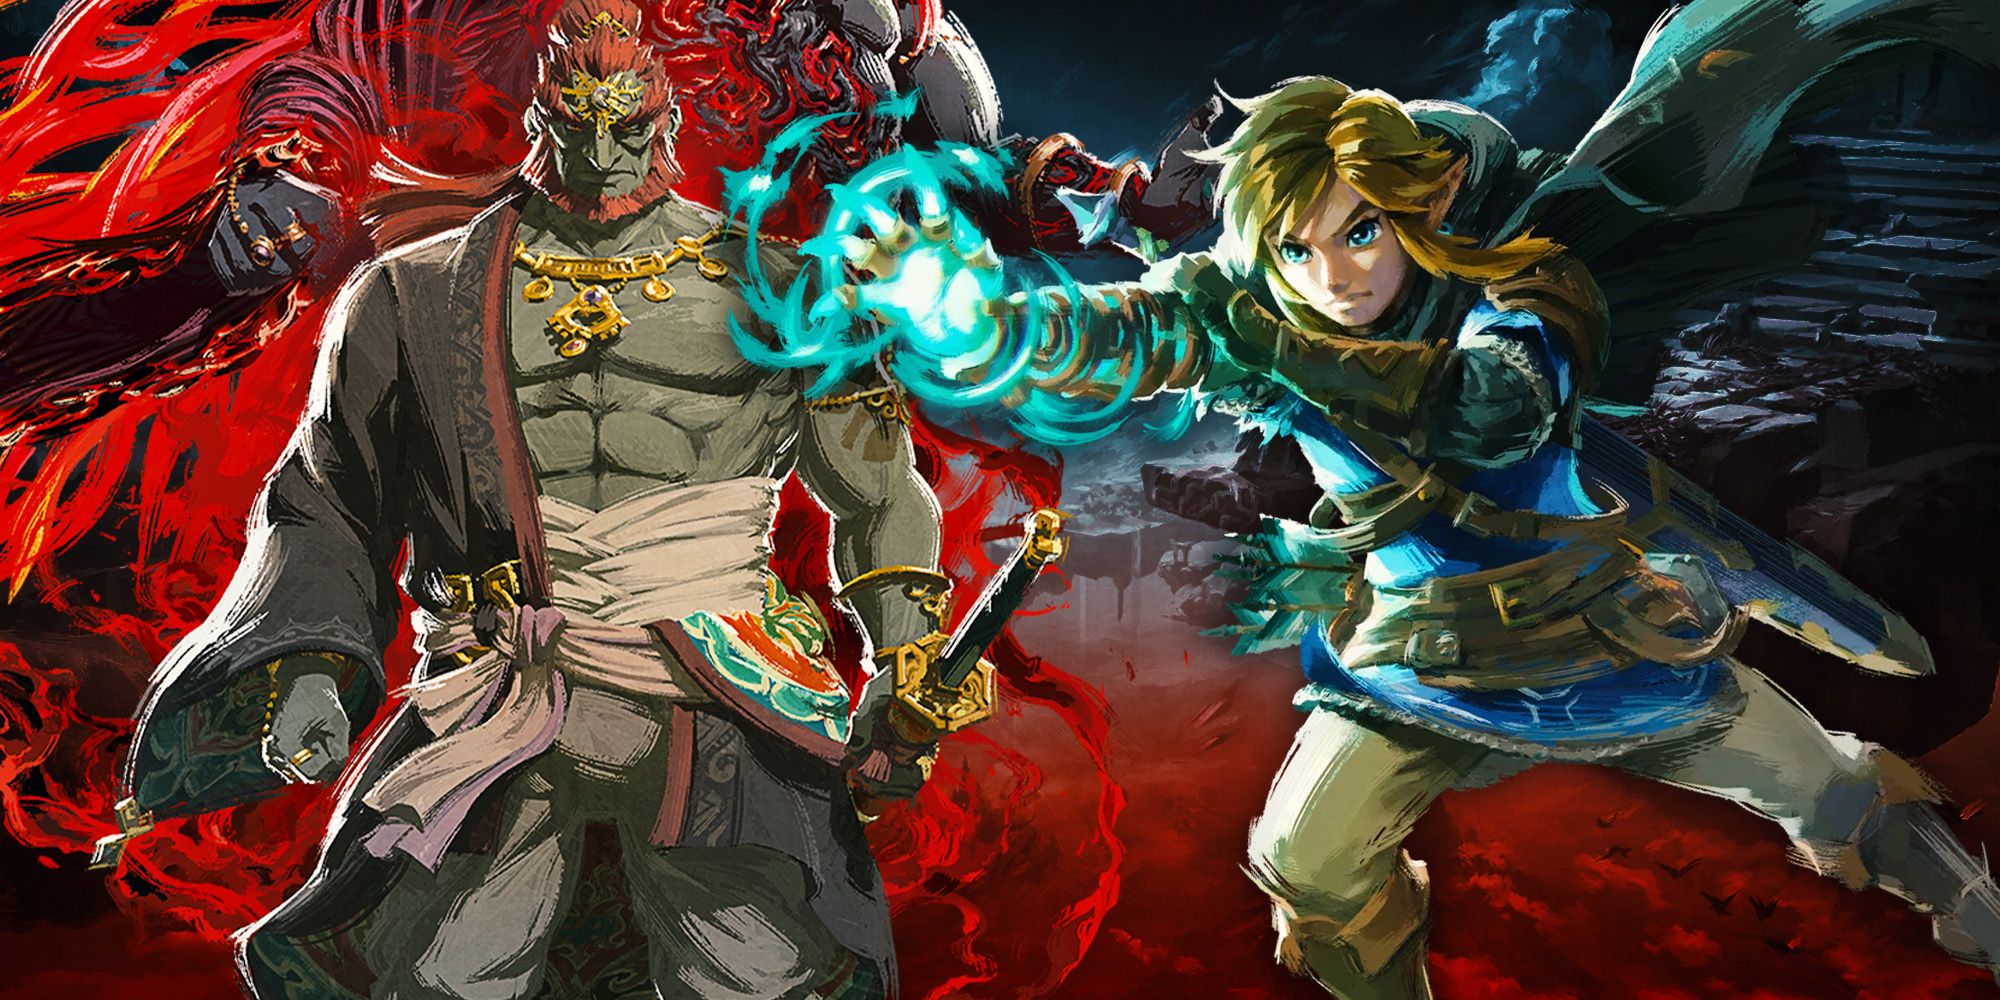 Link Fighting Ganondorf en Zelda: TOTK ni siquiera es una pelea justa